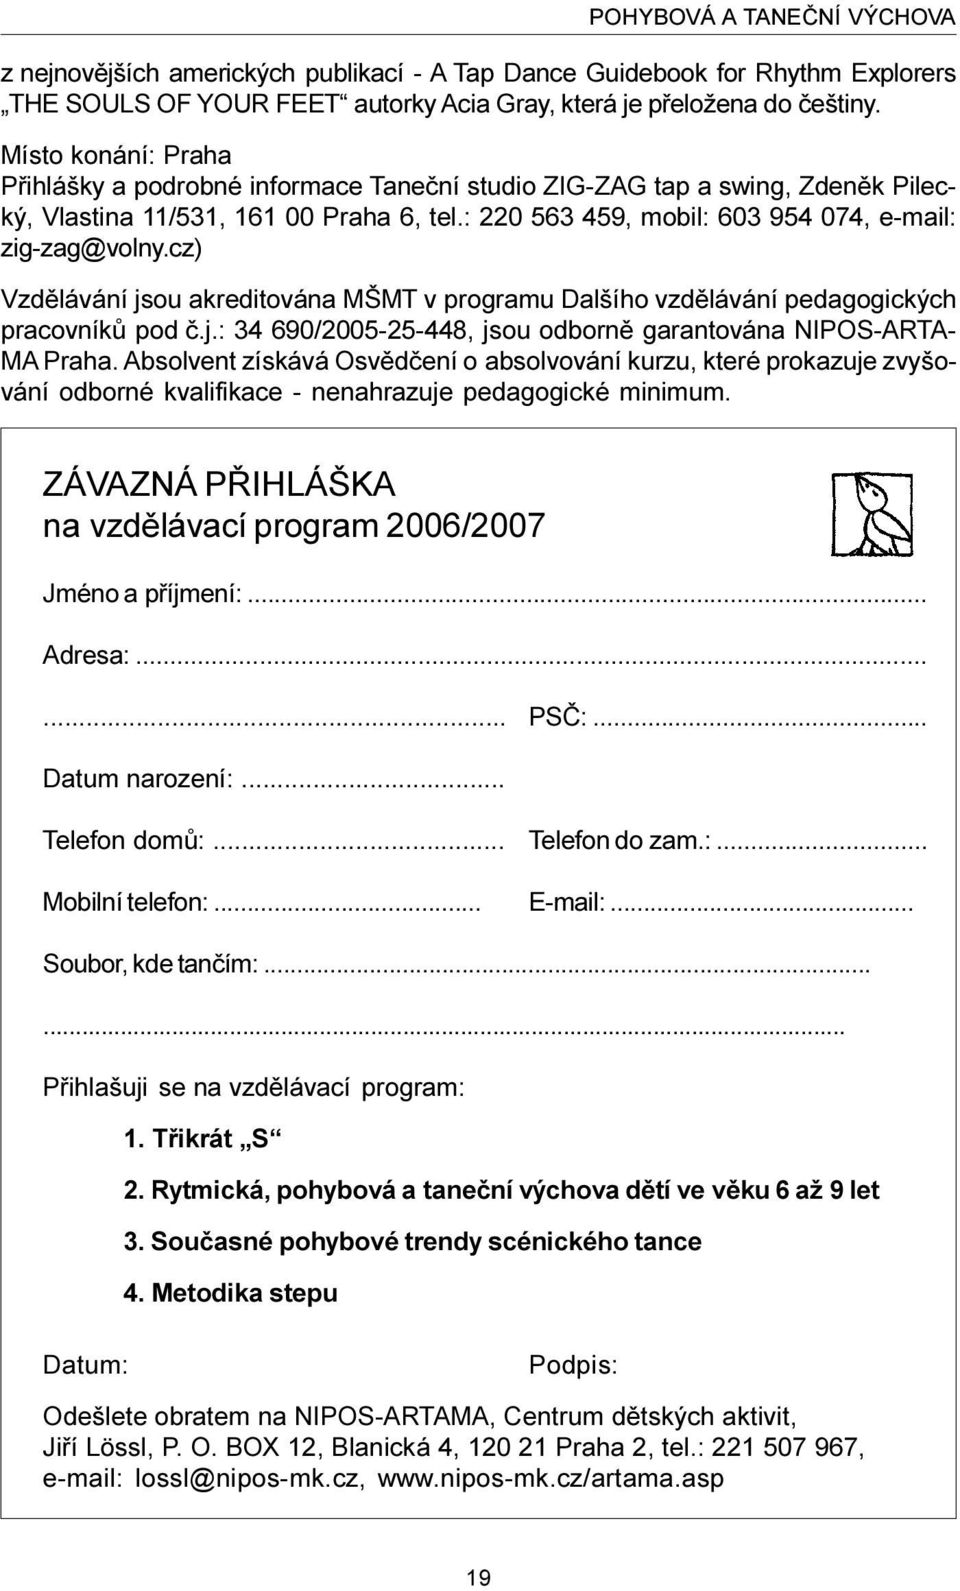 cz) Vzdìlávání jsou akreditována MŠMT v programu Dalšího vzdìlávání pedagogických pracovníkù pod è.j.: 34 690/2005-25-448, jsou odbornì garantována NIPOS-ARTA- MA Praha.